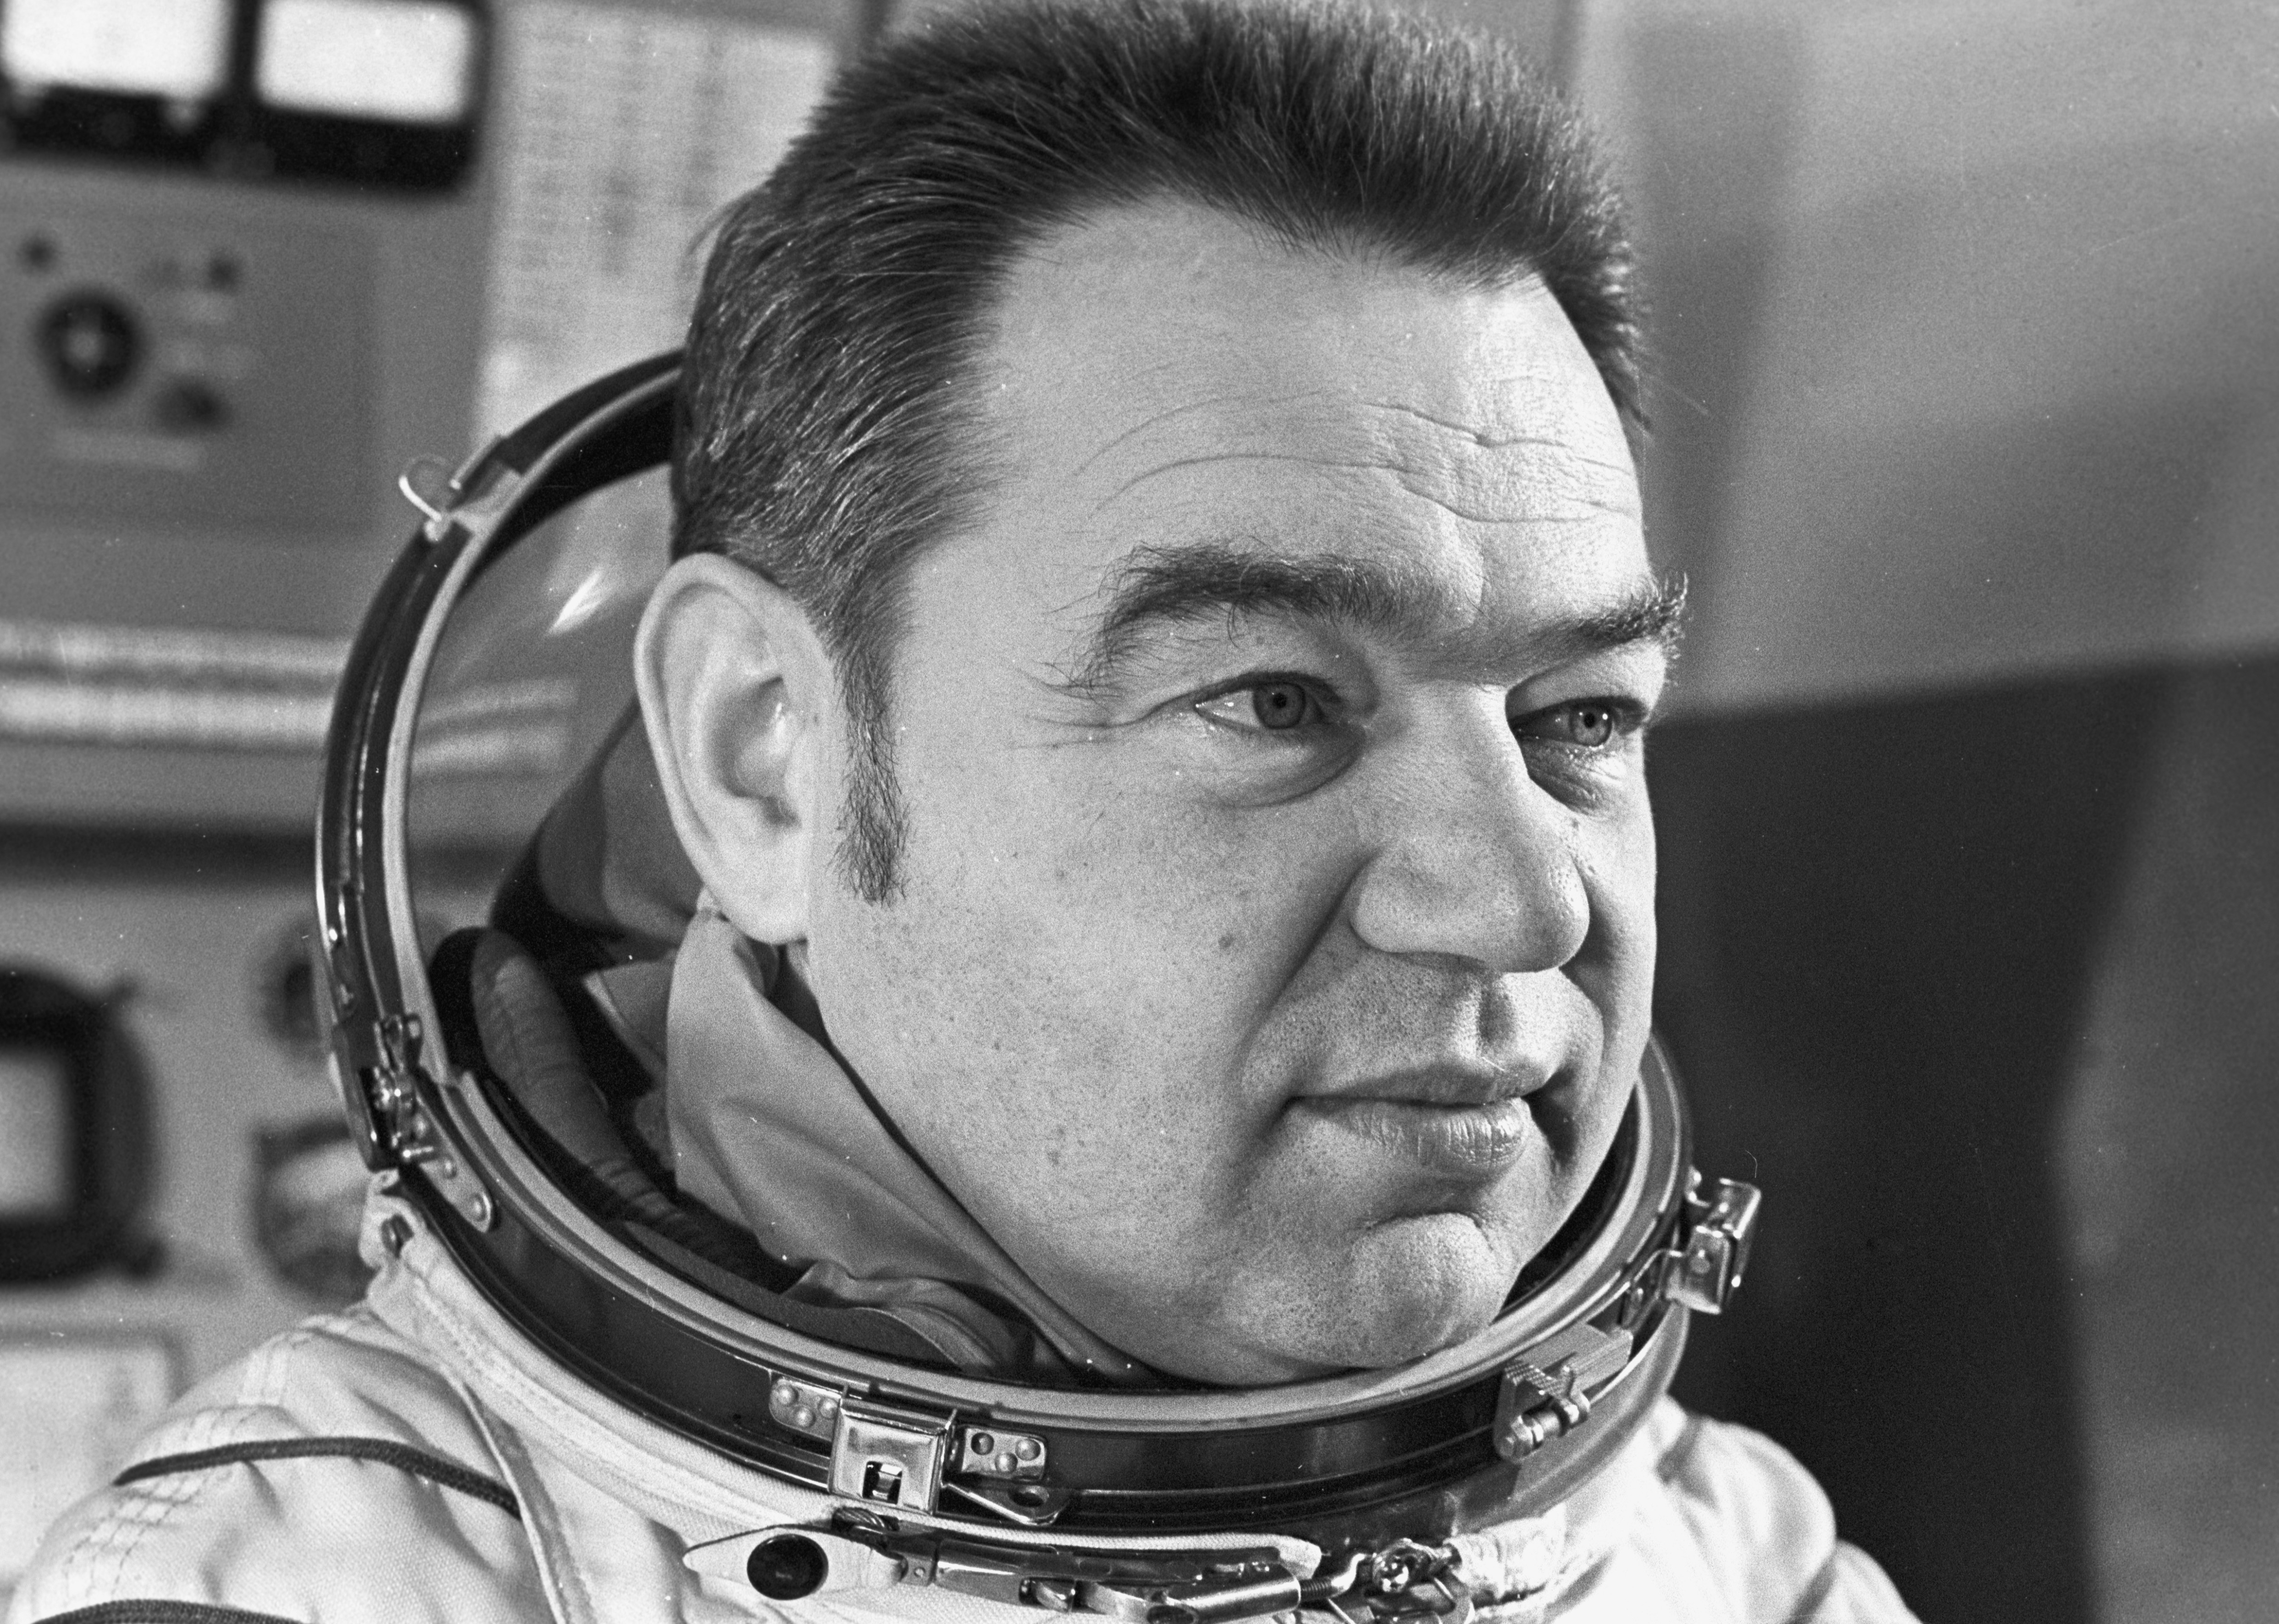 Имя первого советского космонавта